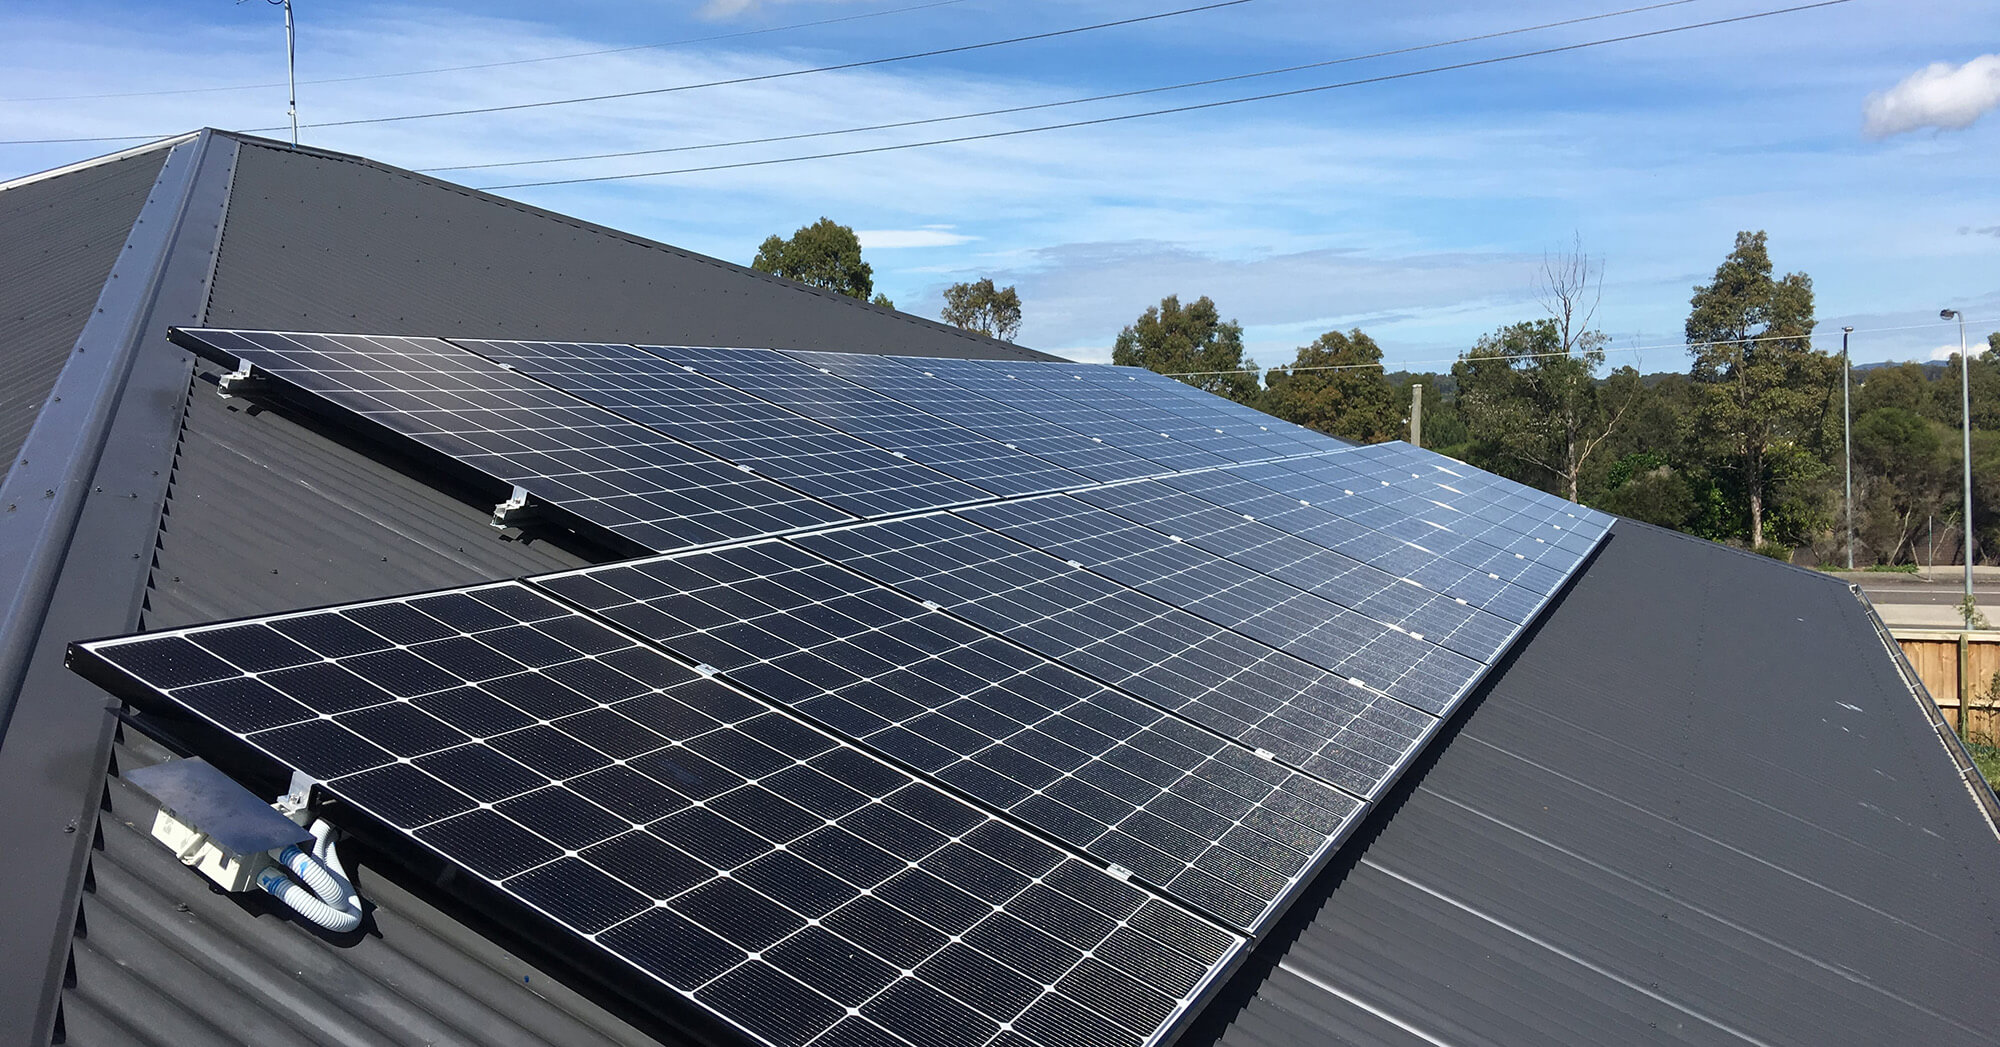 1 in 4 Australian homes now run on solar panels